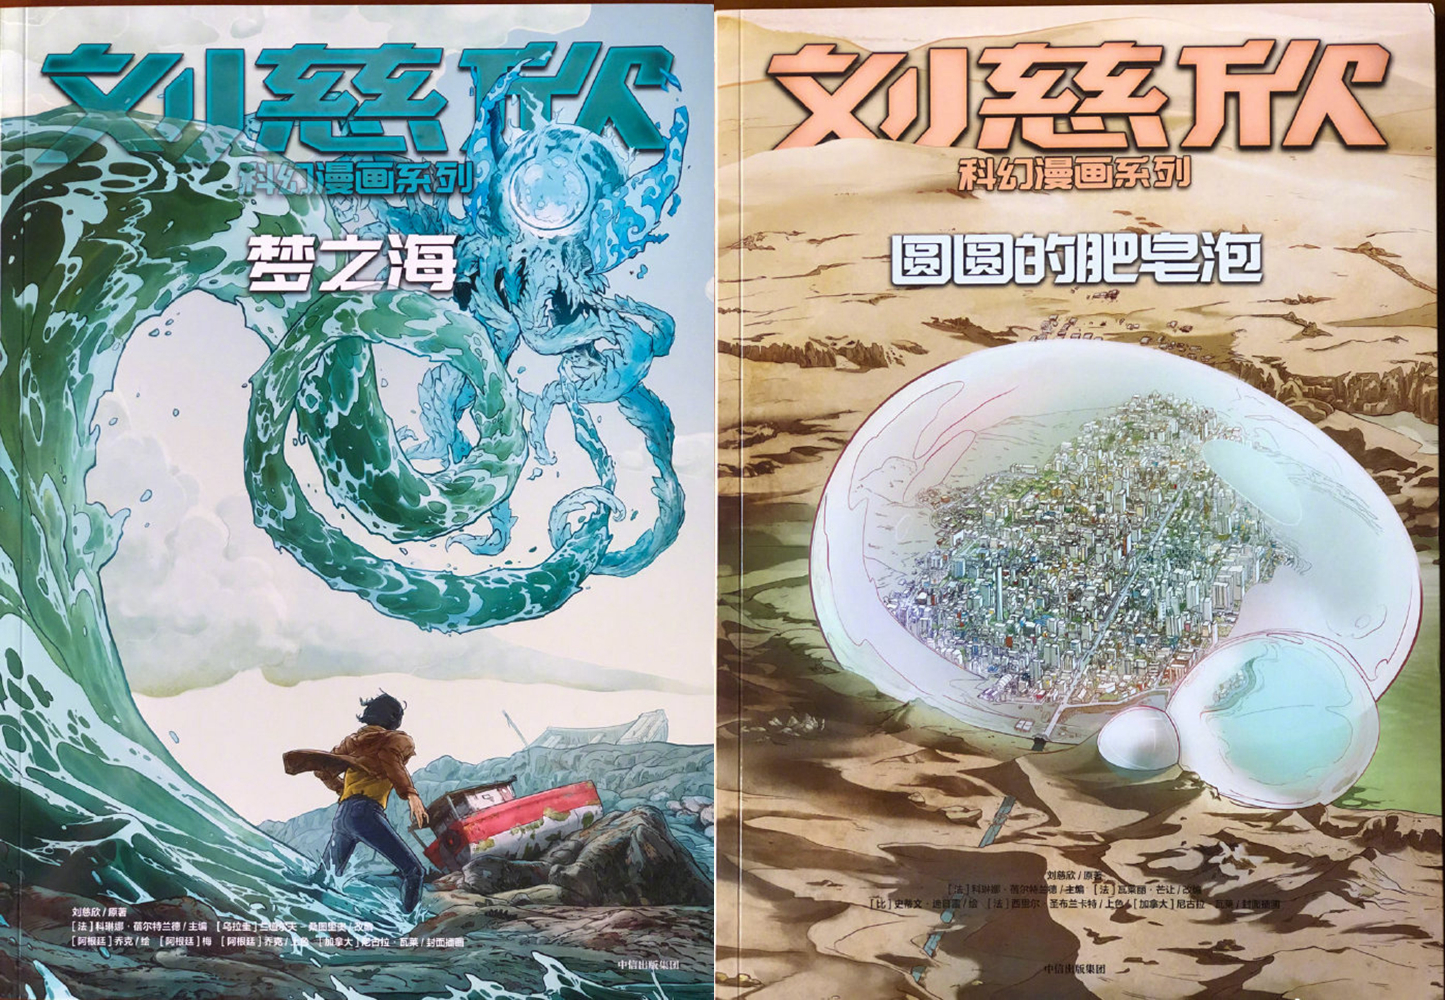 刘慈欣科幻漫画《流浪地球》动态PV首发 四部作品已发售